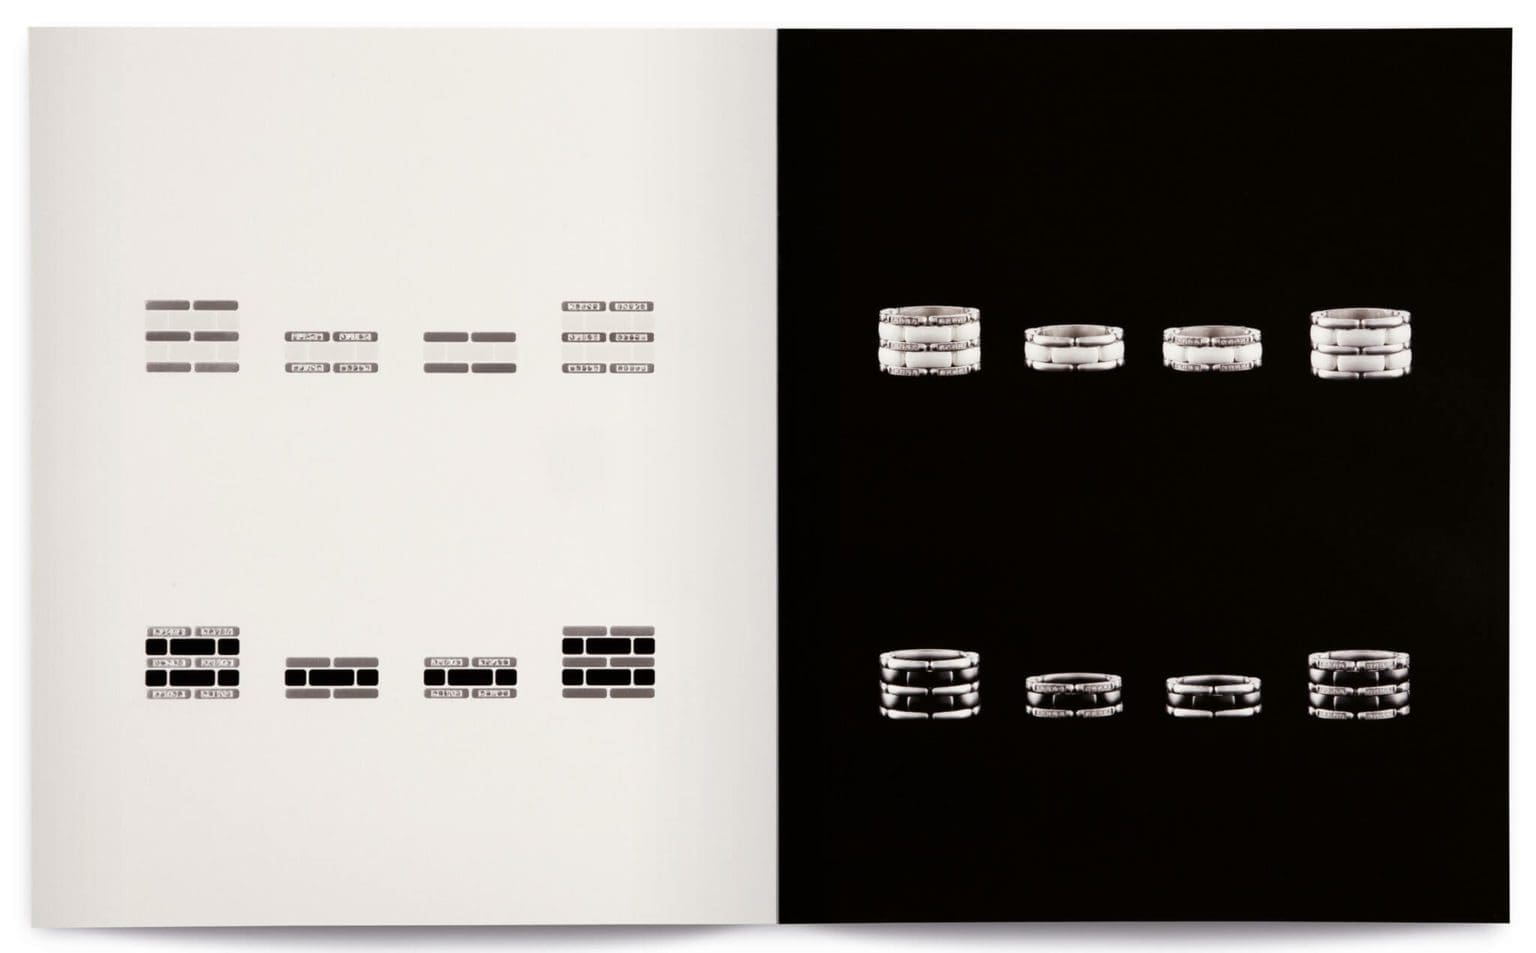 Interprétation graphique des bagues de chez Chanel, dorure, vernis et noir et blanc sous la direction artistique d'IchetKar